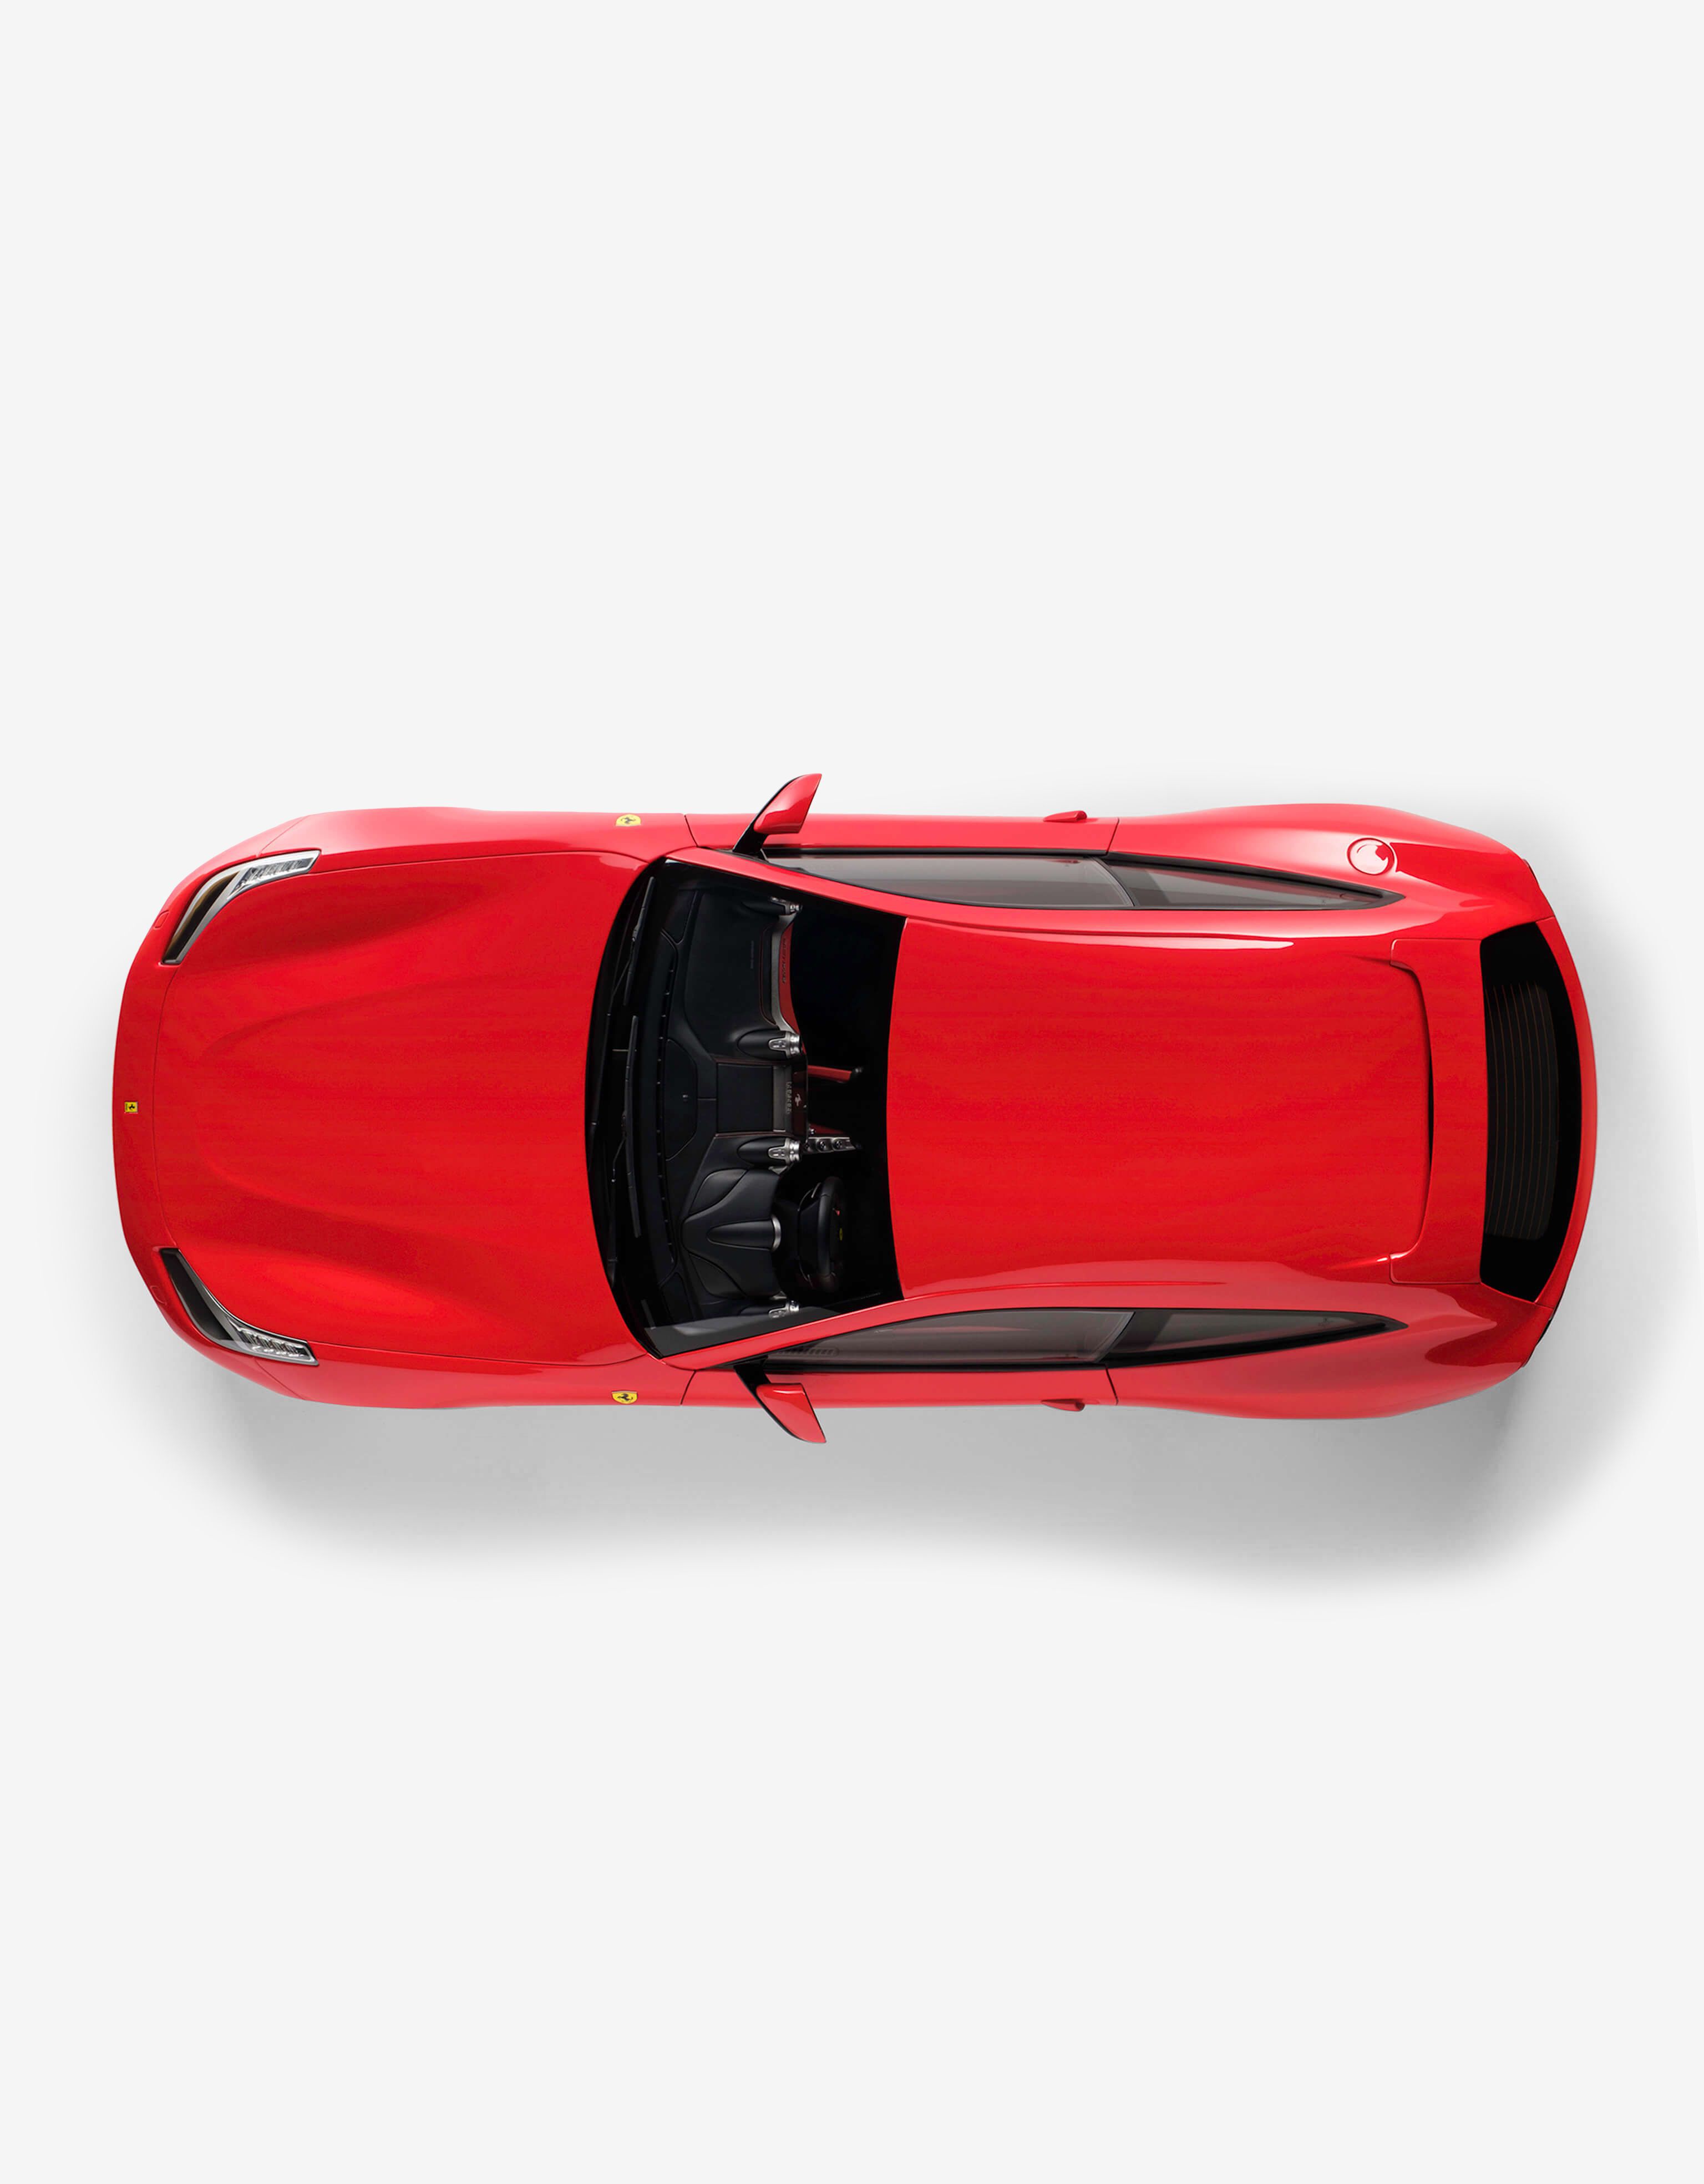 Ferrari Modellauto Ferrari GTC4 Lusso im Maßstab 1:8 Rot L7599f